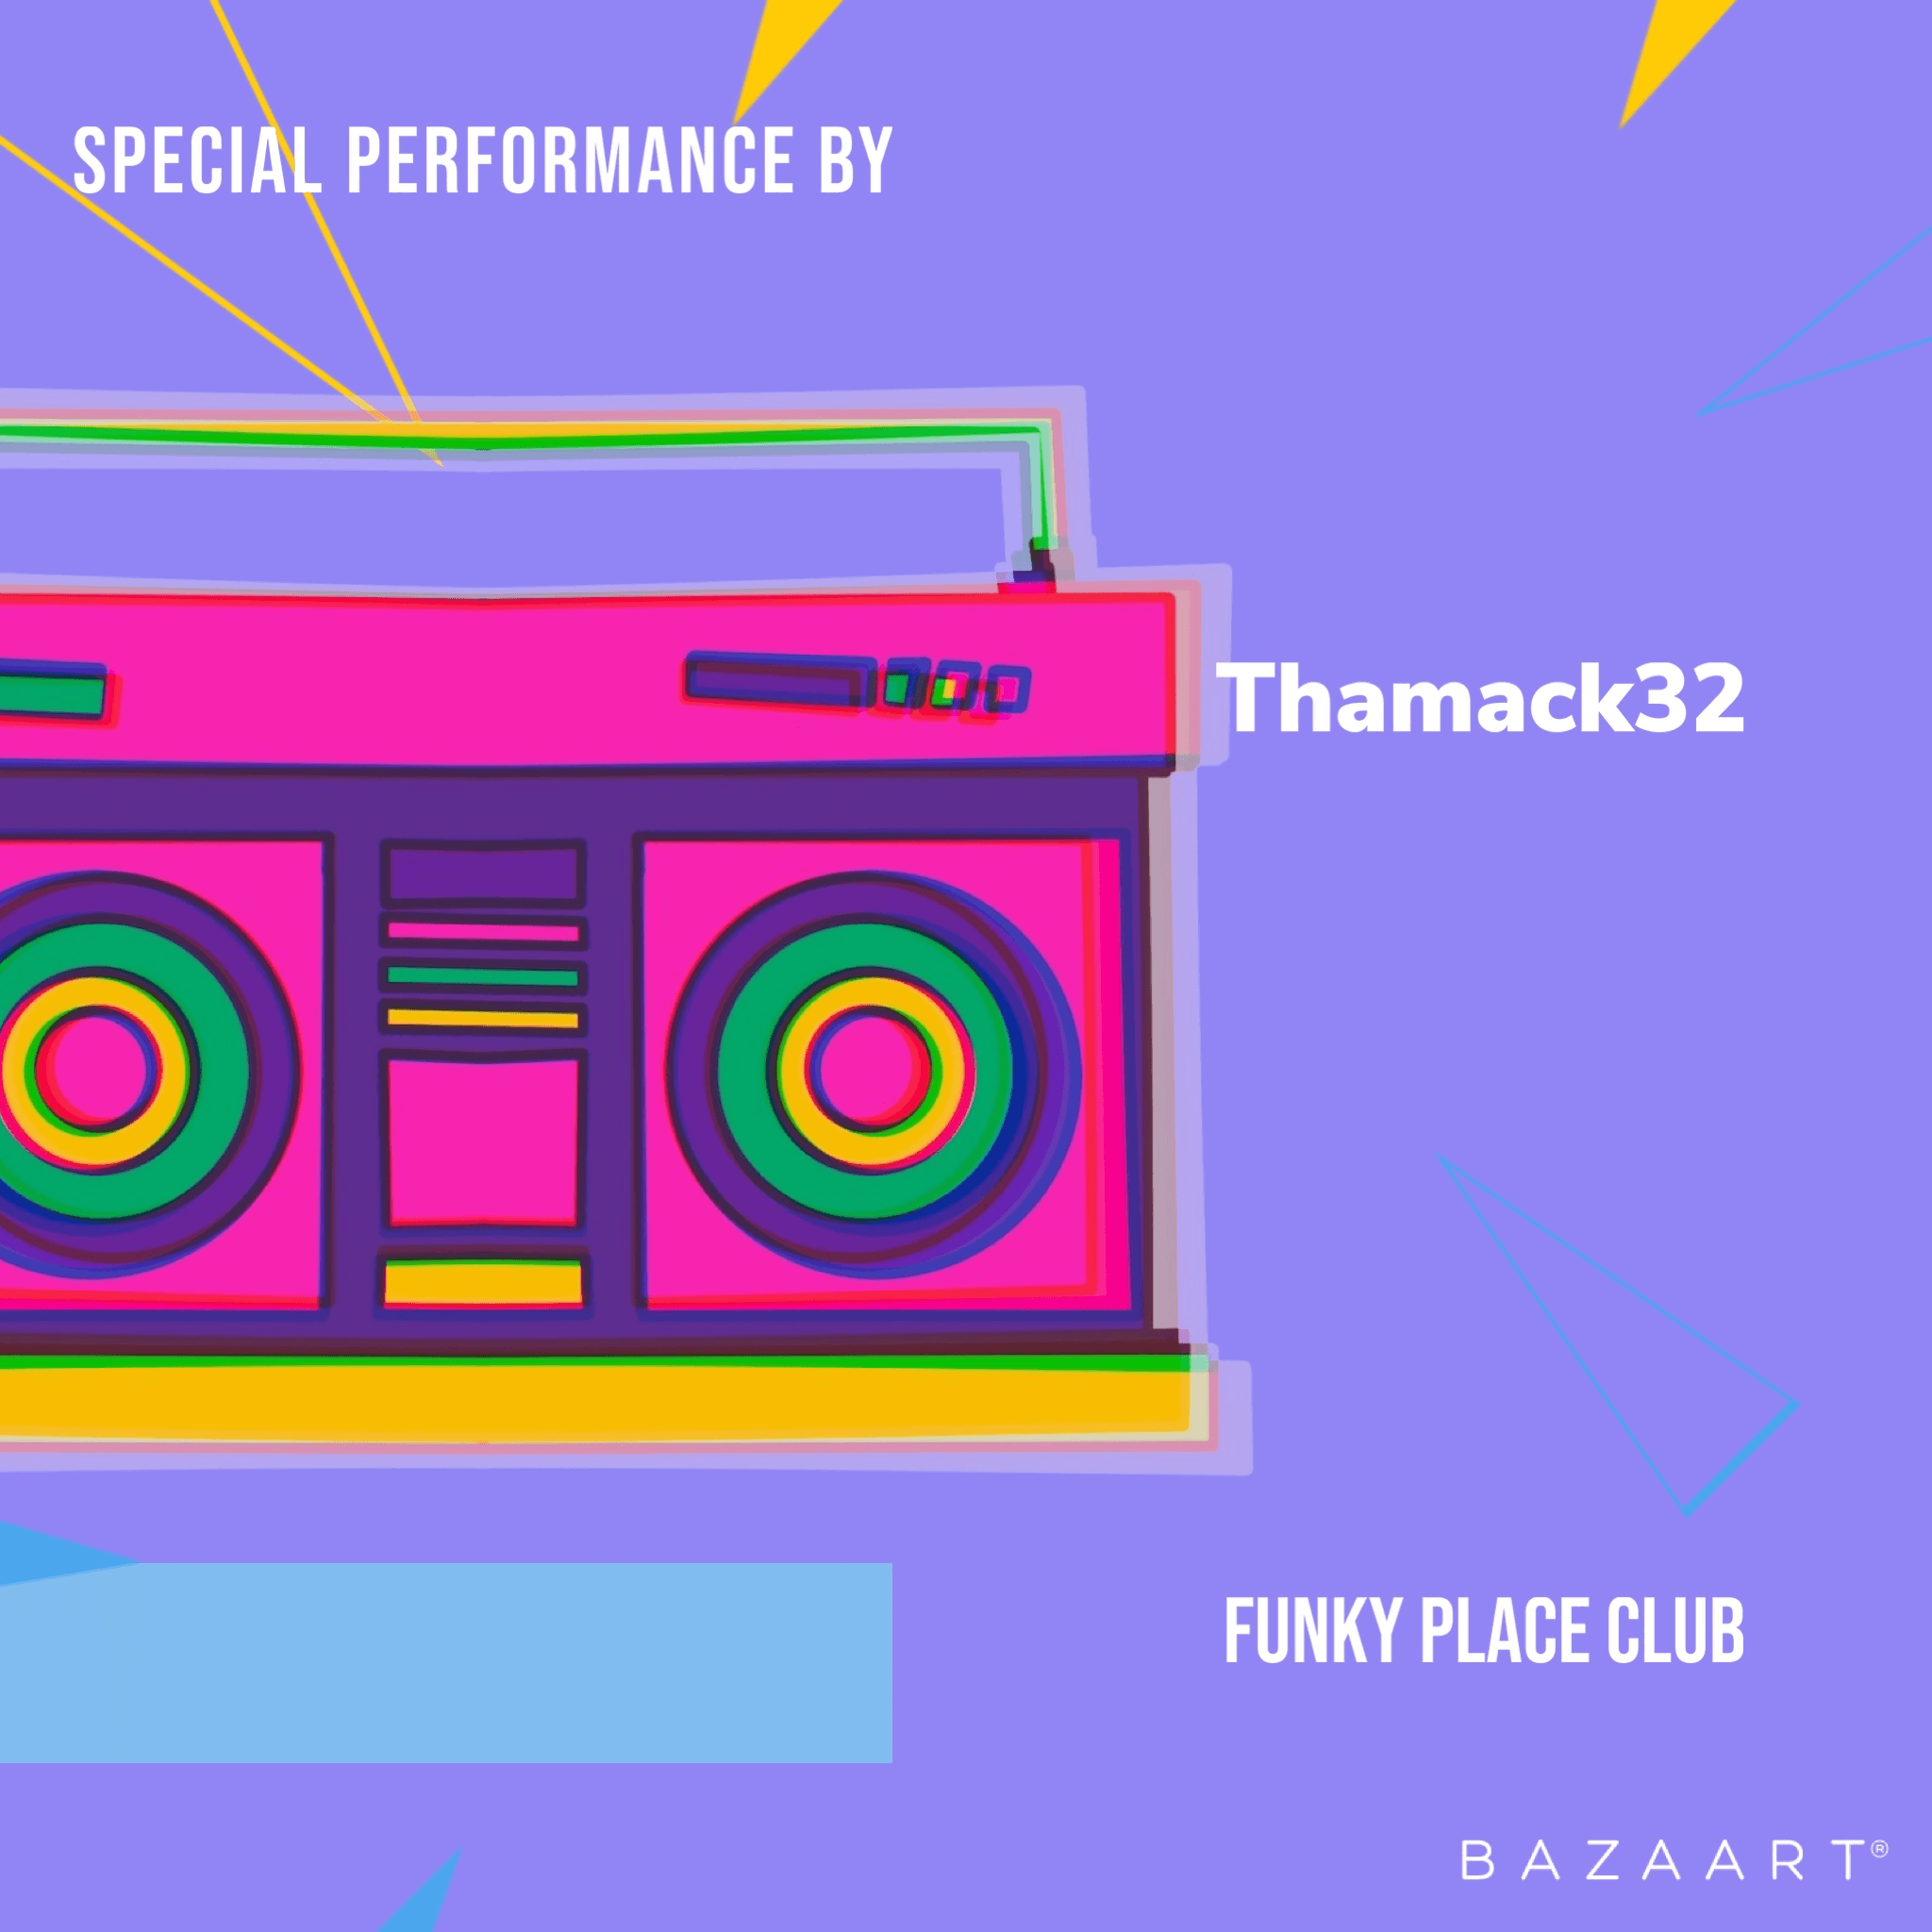 Thamack32 banner